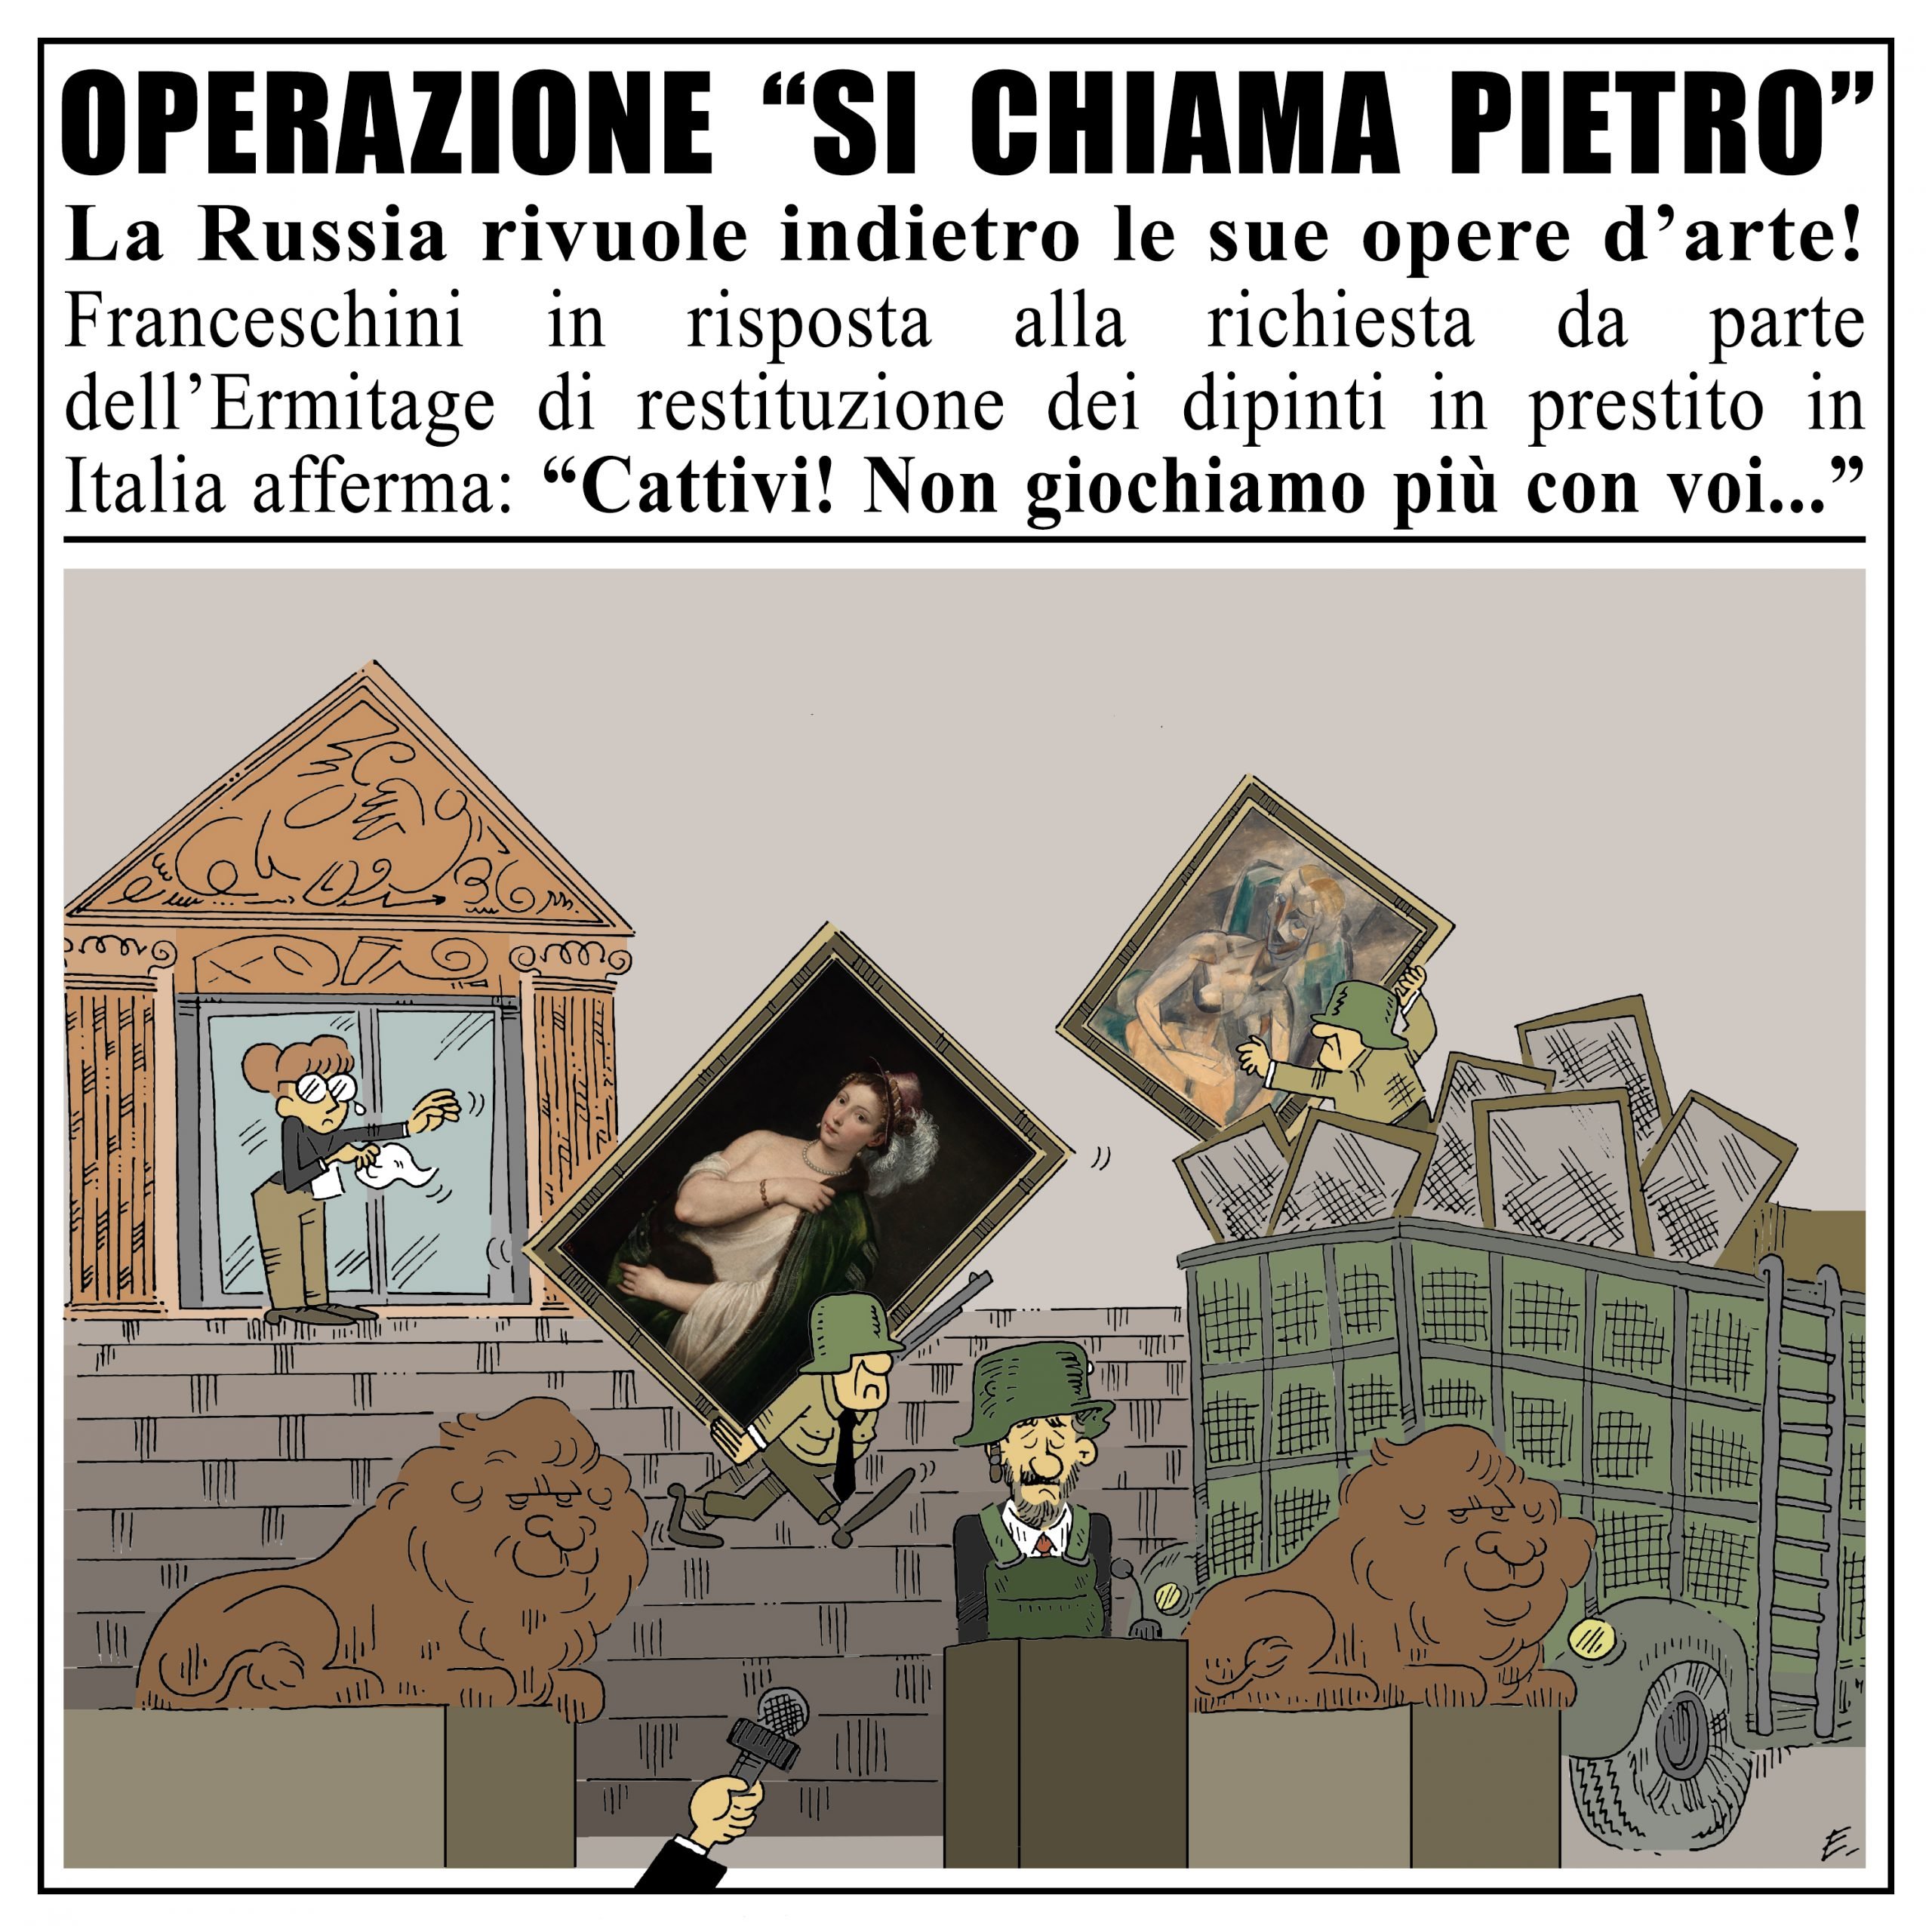 “Operazione “Si chiama Pietro” | Enrico Ledda